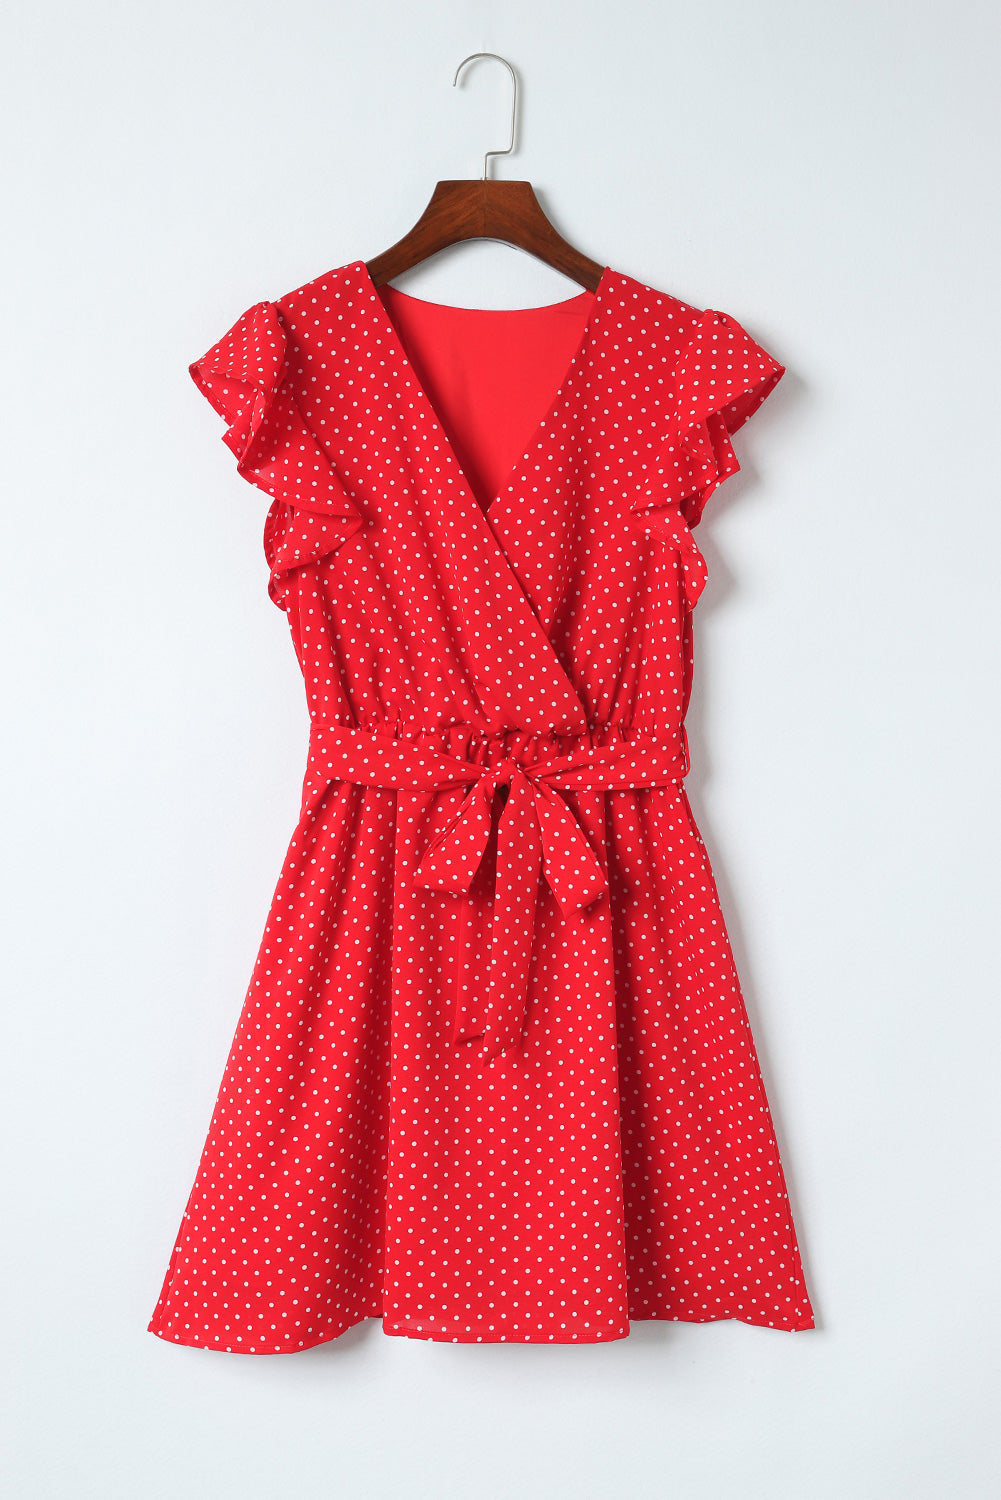 Feurig rotes, gepunktetes Kleid mit V-Ausschnitt und Rüschenärmeln